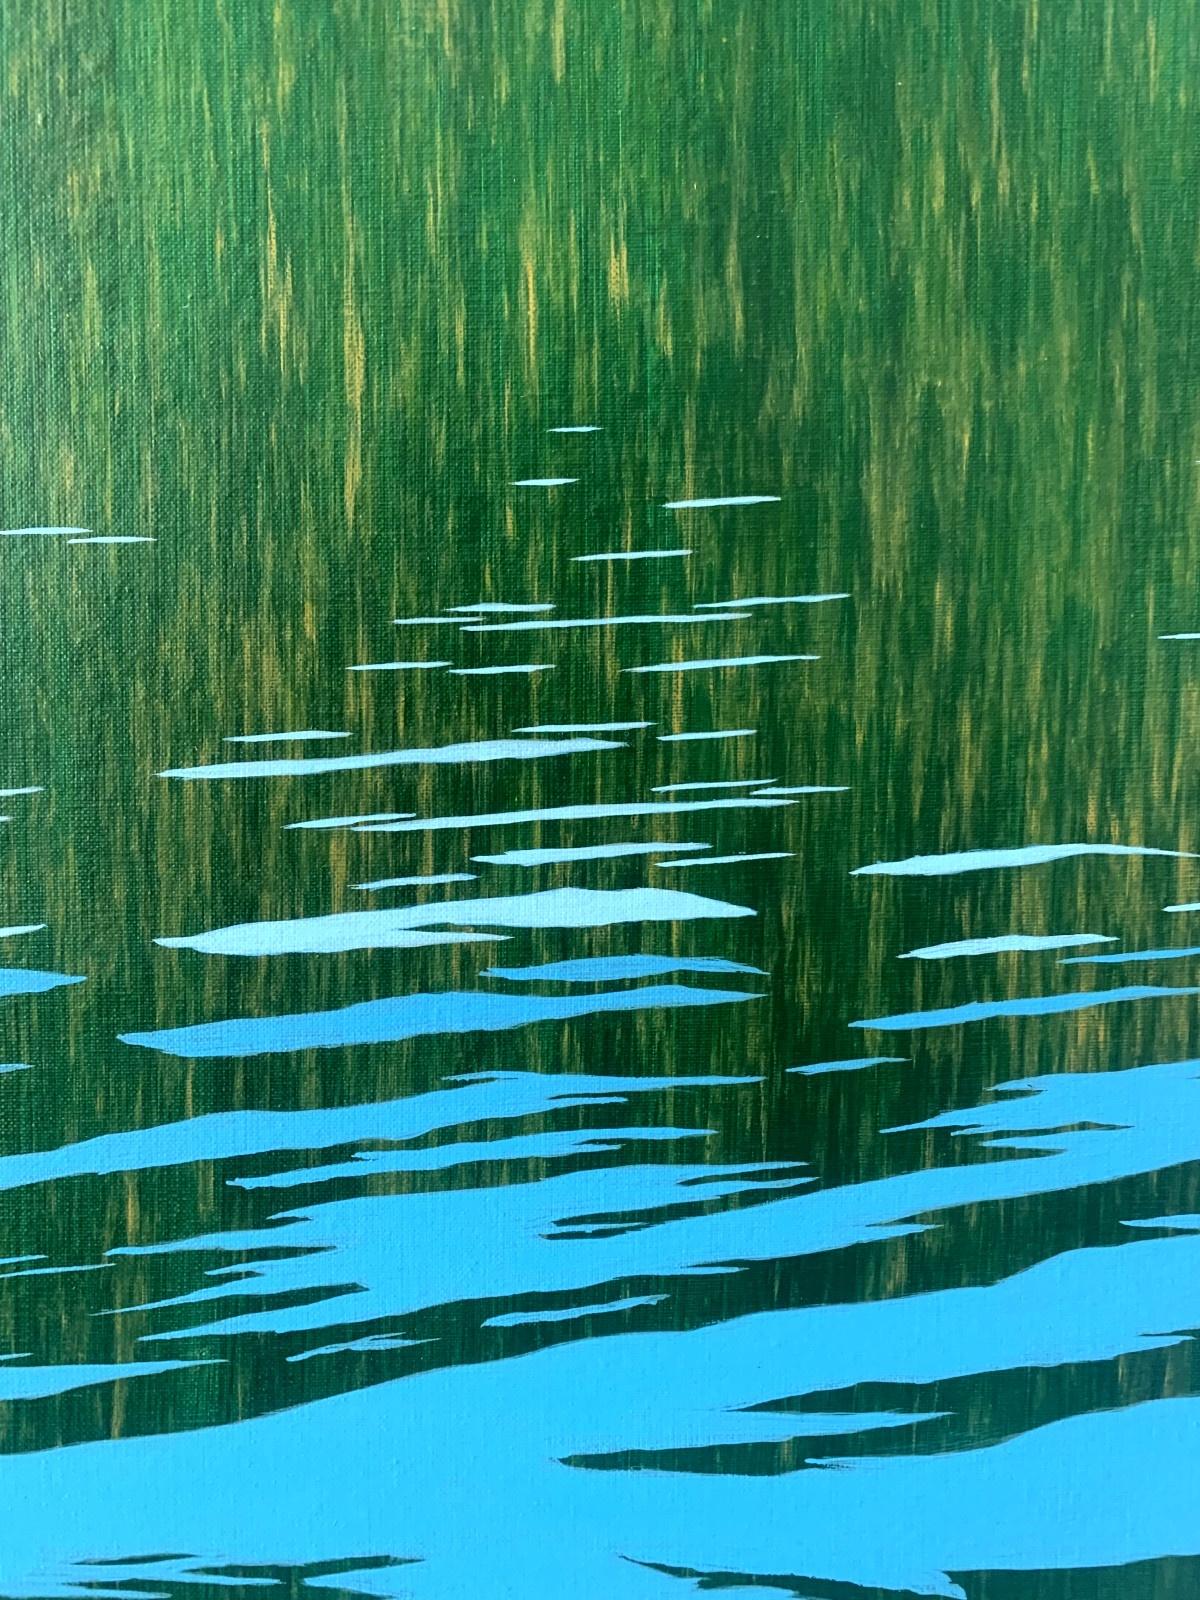 Zeitgenössisches Gemälde in Acryl auf Leinwand des polnischen Künstlers Tomek Mistak. Das Gemälde stellt die Spiegelung der Landschaft auf der Wasseroberfläche dar. Die Malerei ist fast eine Abstraktion. Die Hauptfarben sind blau und grün.

TOMEK